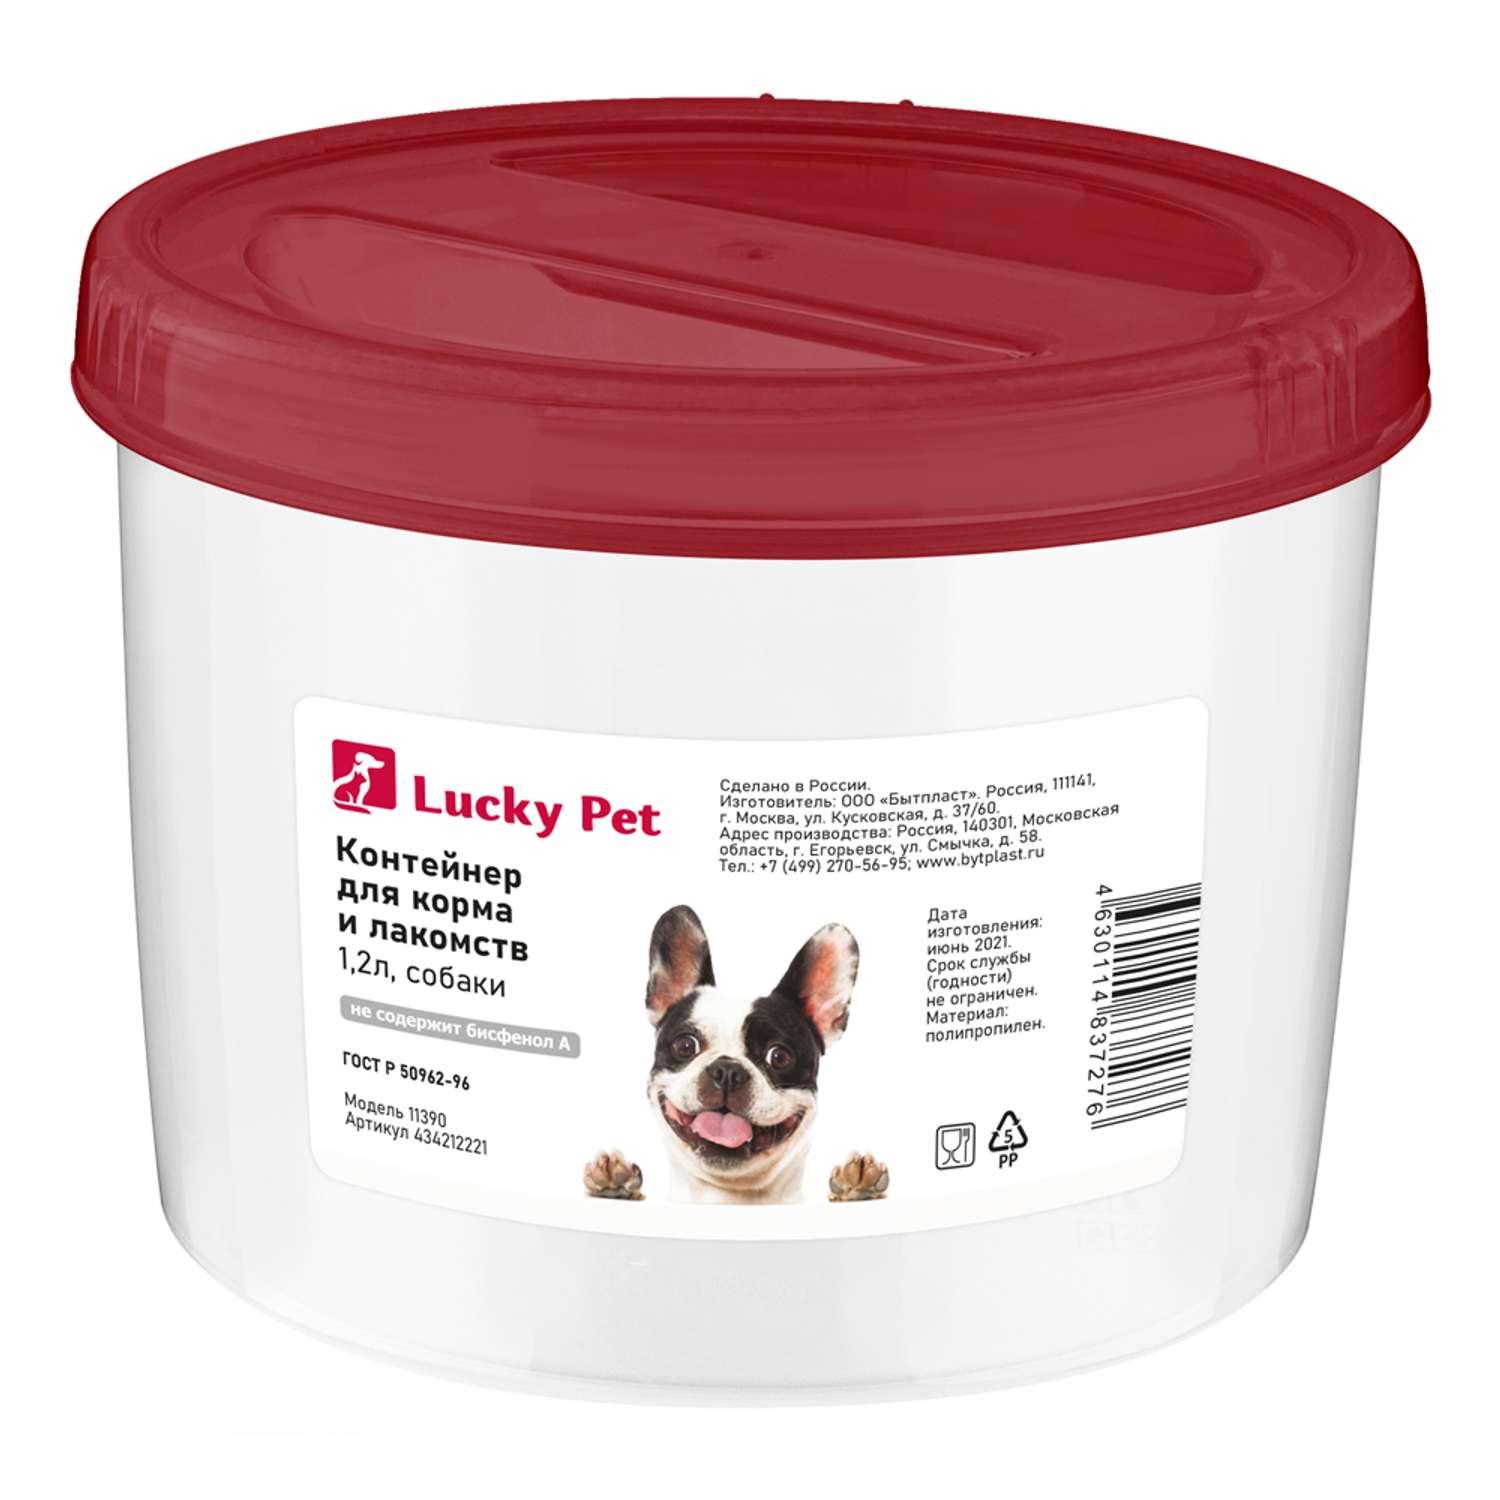 Контейнер для хранения корма LUCKY PET и лакомств для собак 1.2 л - фото 1